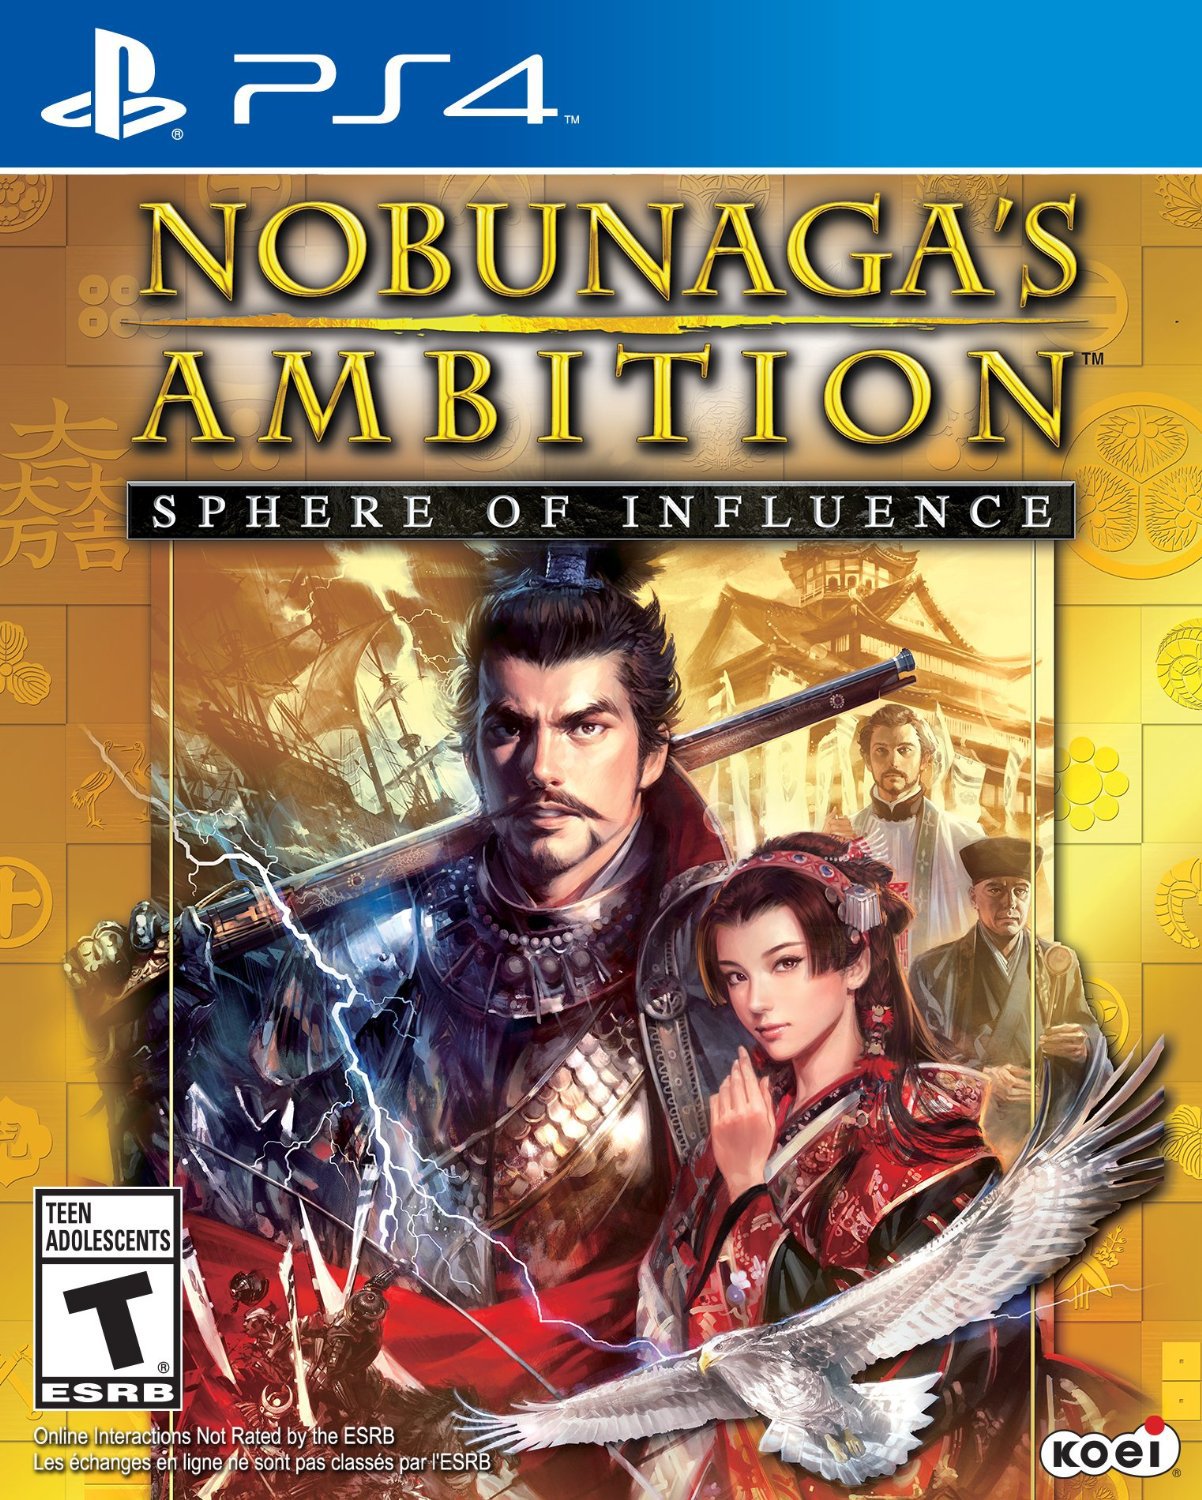 Nobunagas Ambition